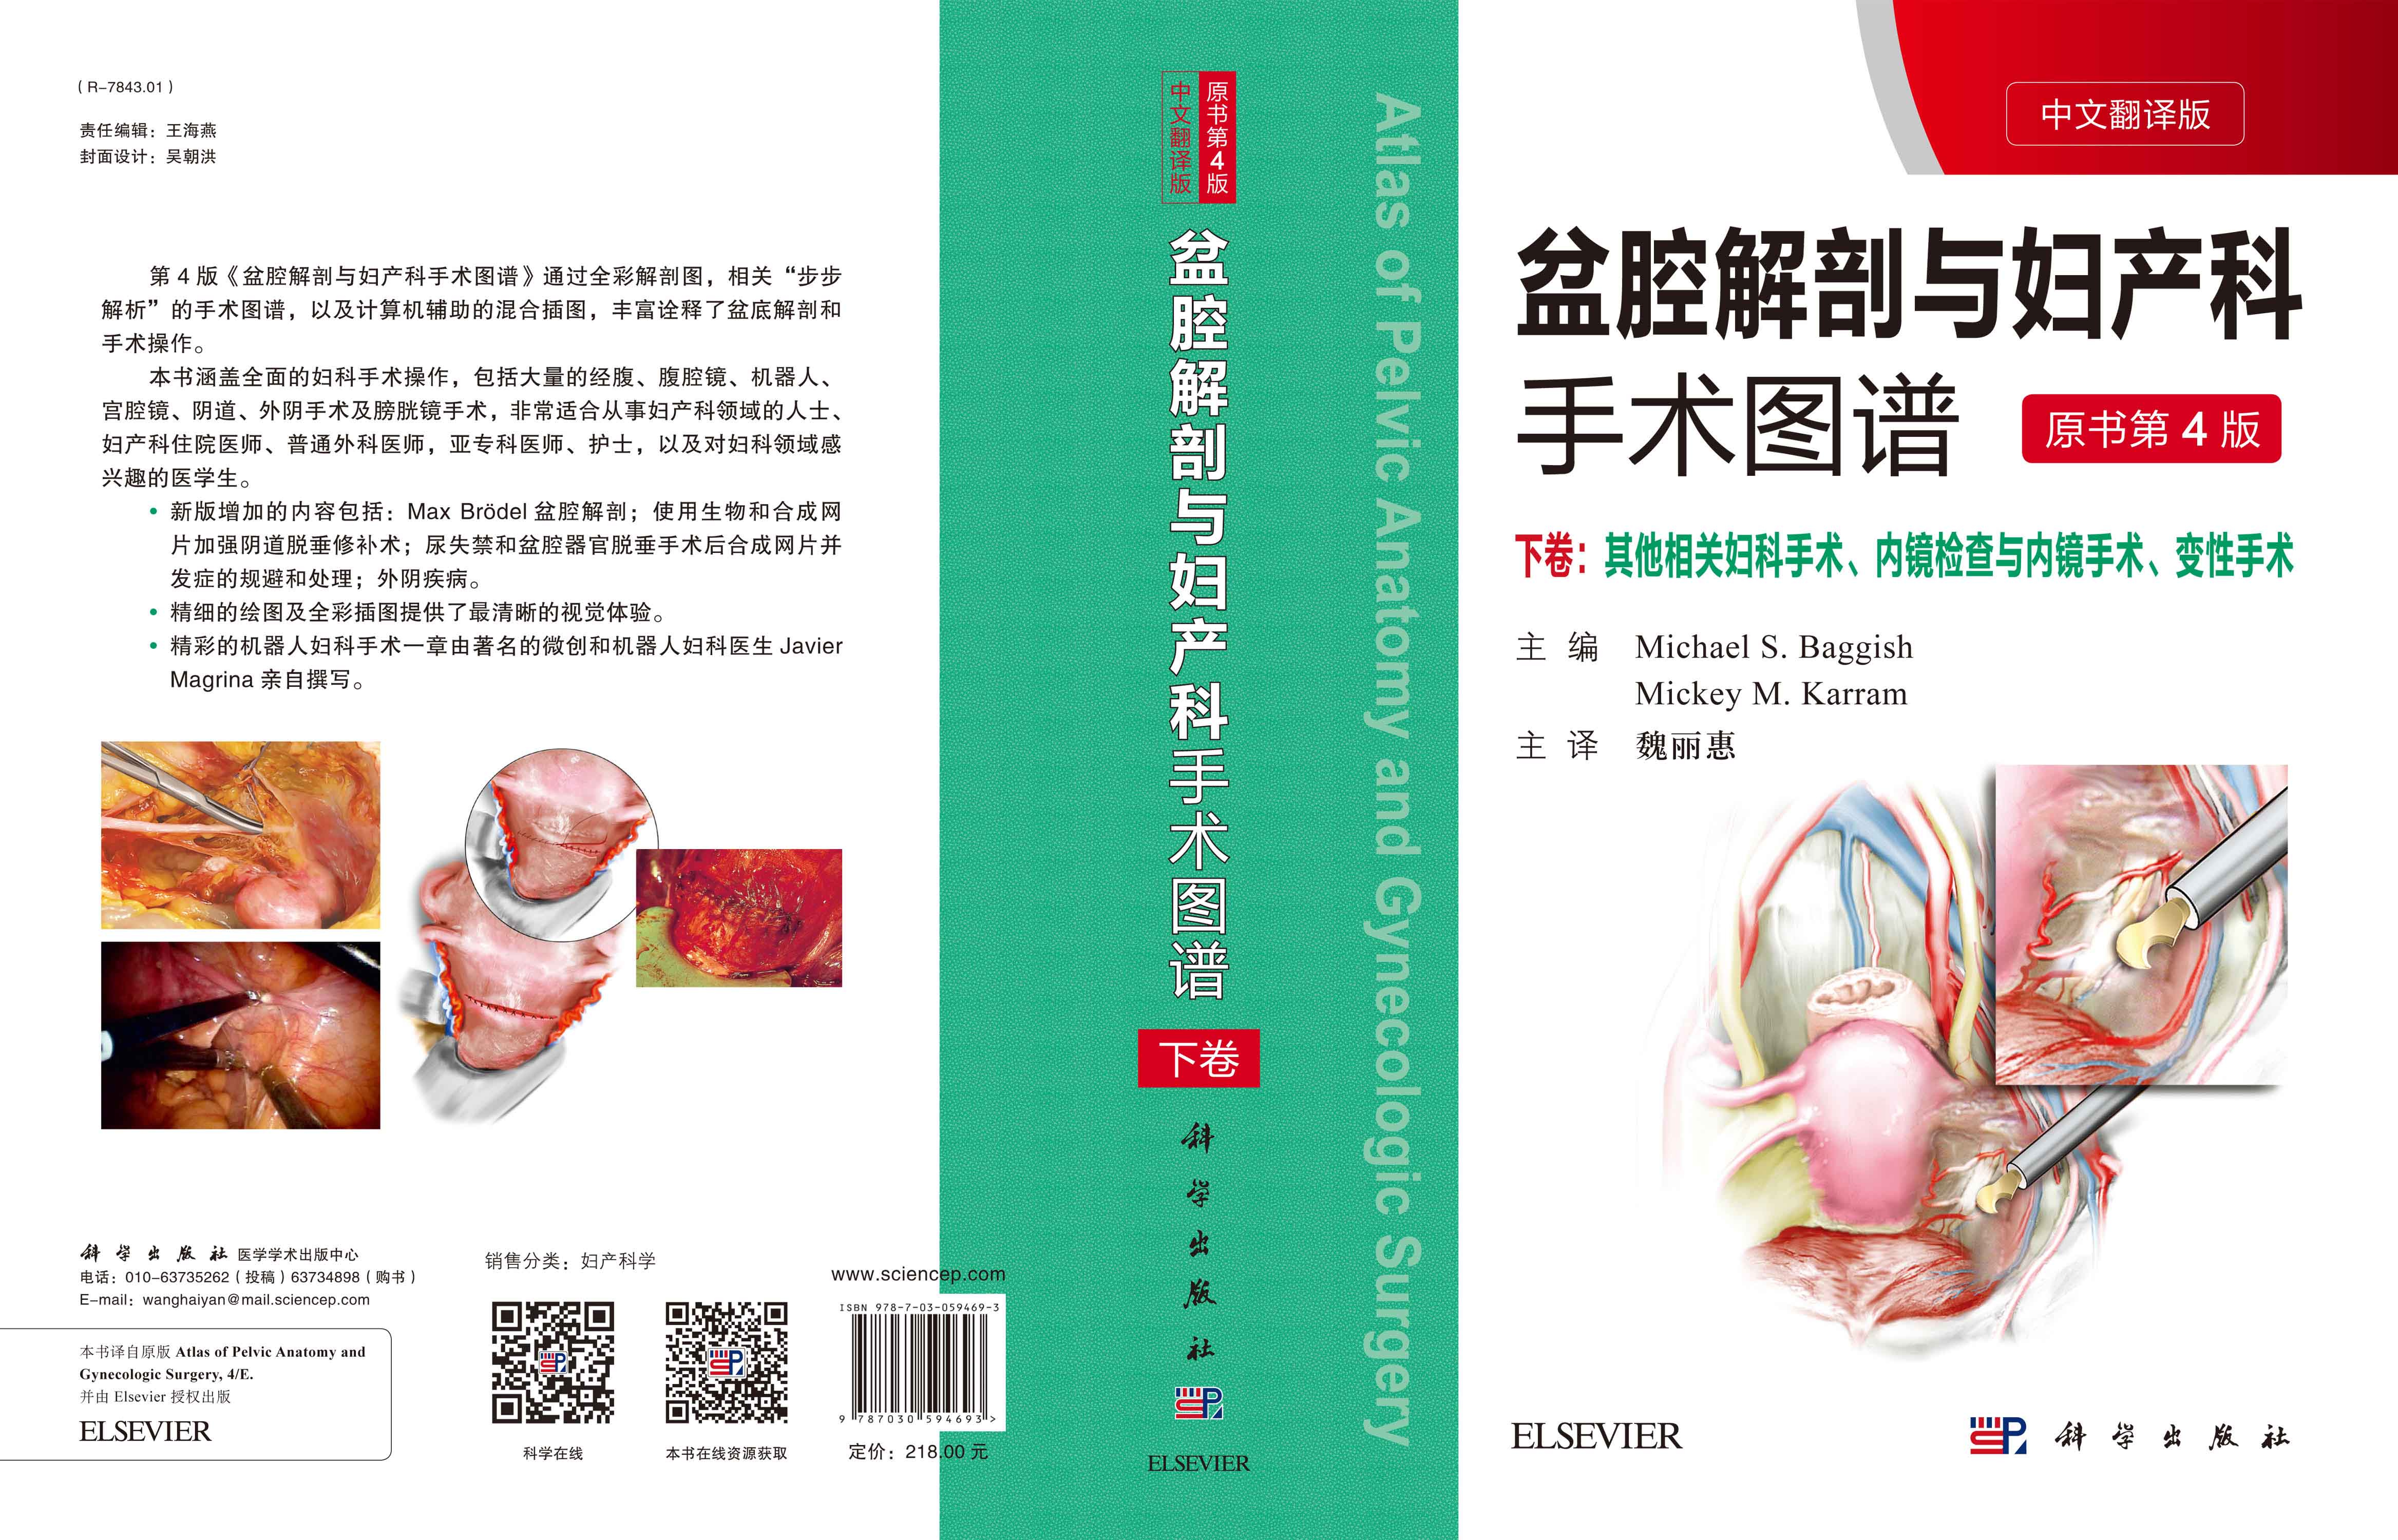 盆腔解剖与妇产科手术图谱 下卷（中文翻译版，原书第4版）